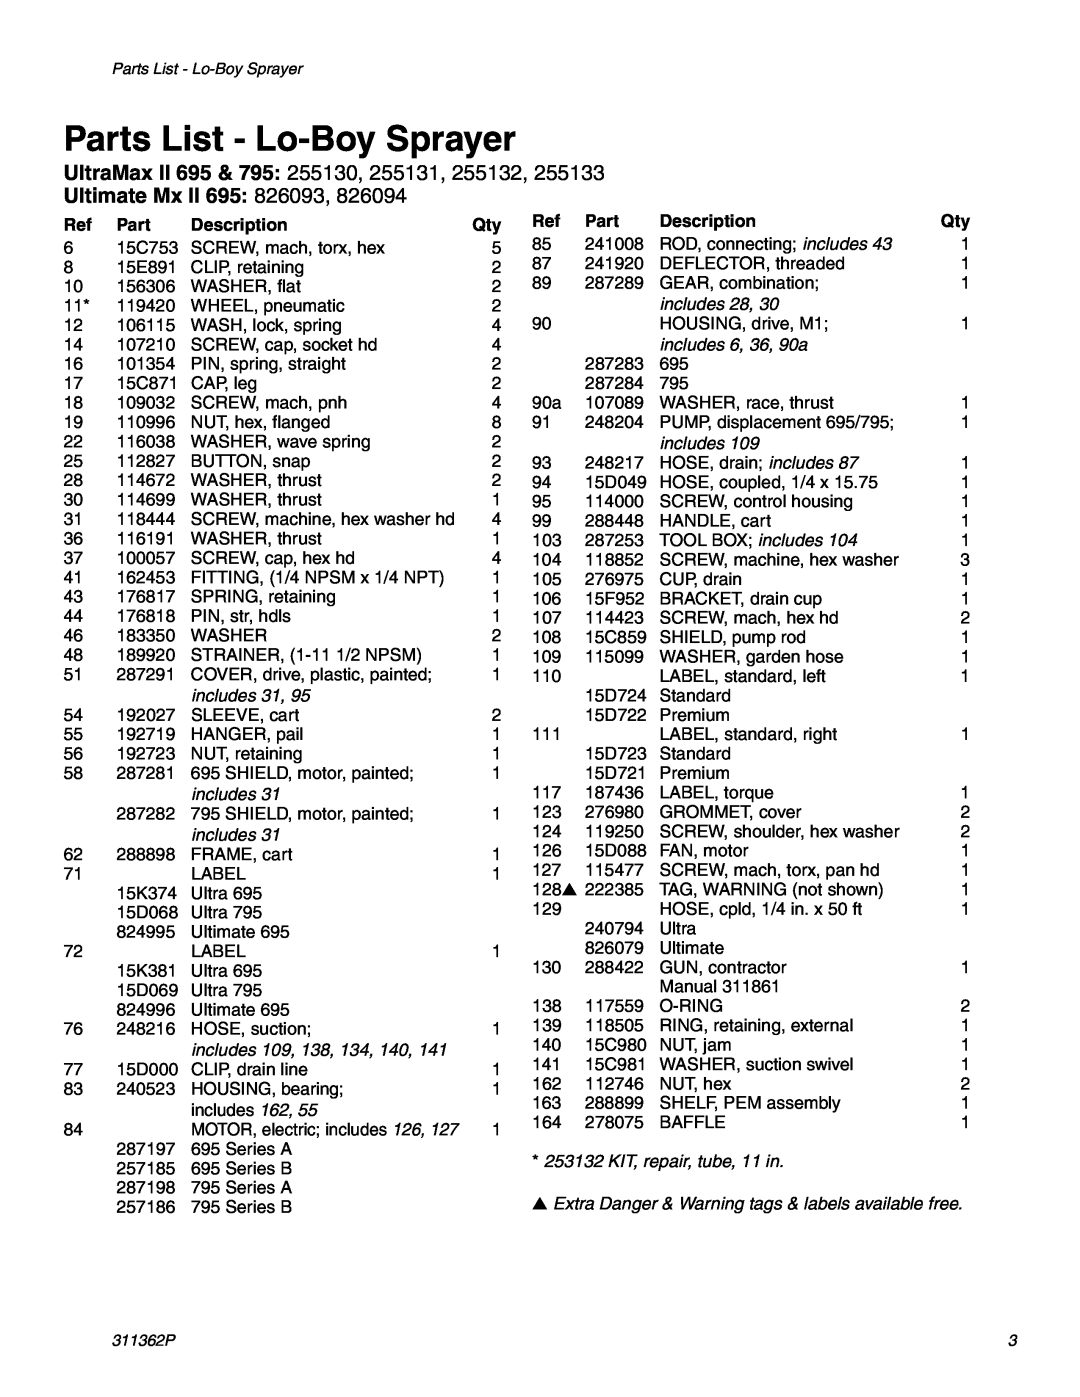 Graco Inc 1595, 1095 manual Parts List - Lo-Boy Sprayer, Description, UltraMax II 695 & 795 255130, 255131, 255132 